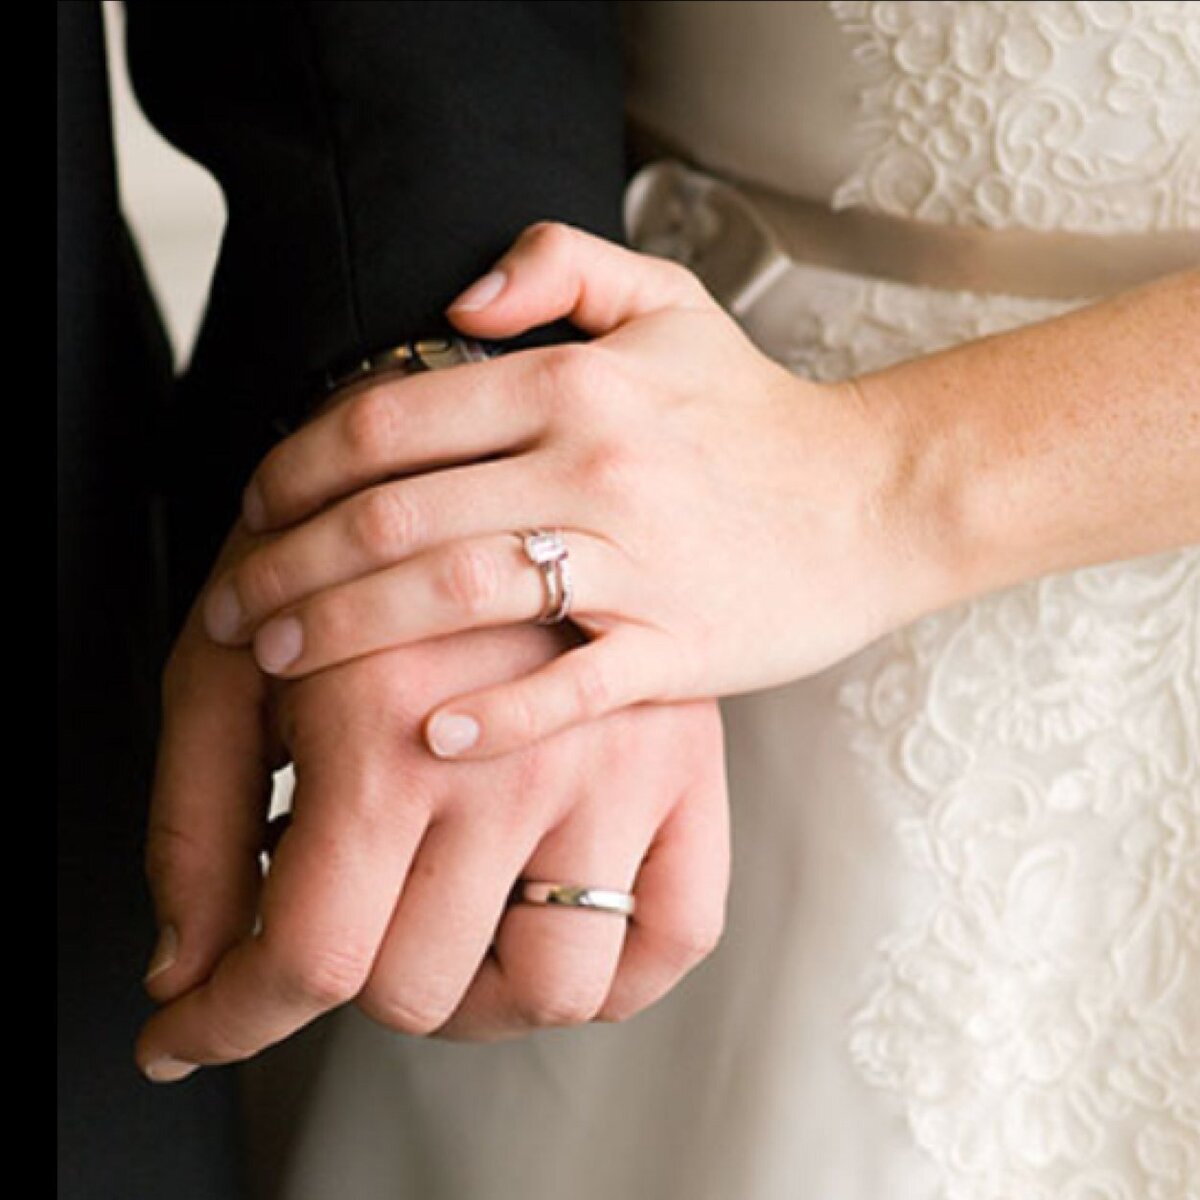 Брак картинки. Обручальное кольцо на руке девушки. Обручальное кольцо на руке невесты. Кольцо на свадьбу мужчине и женщине.